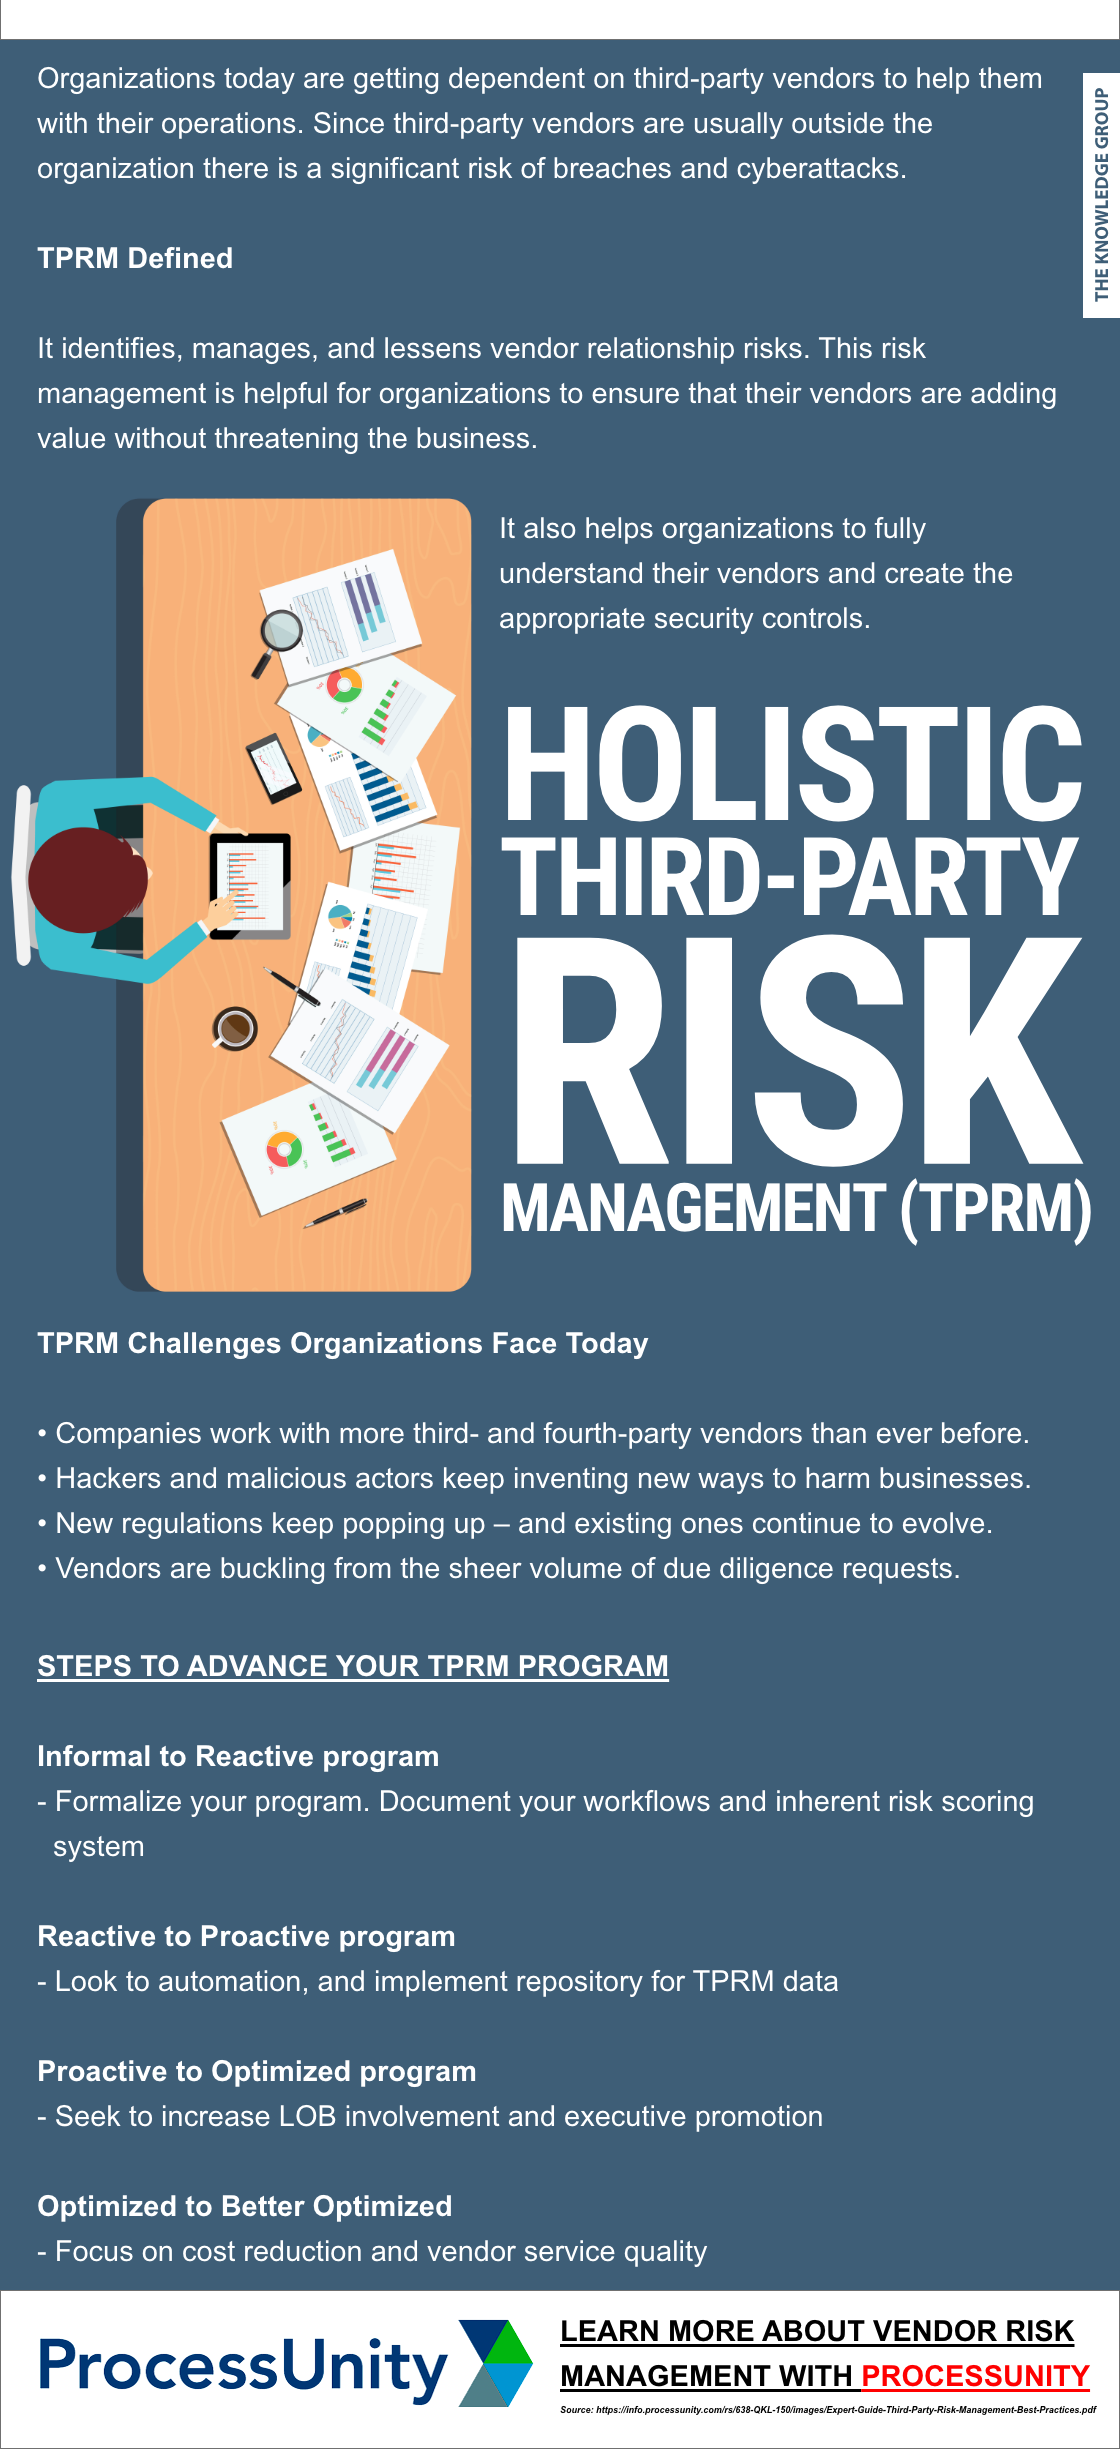 TPRM,technology,risk